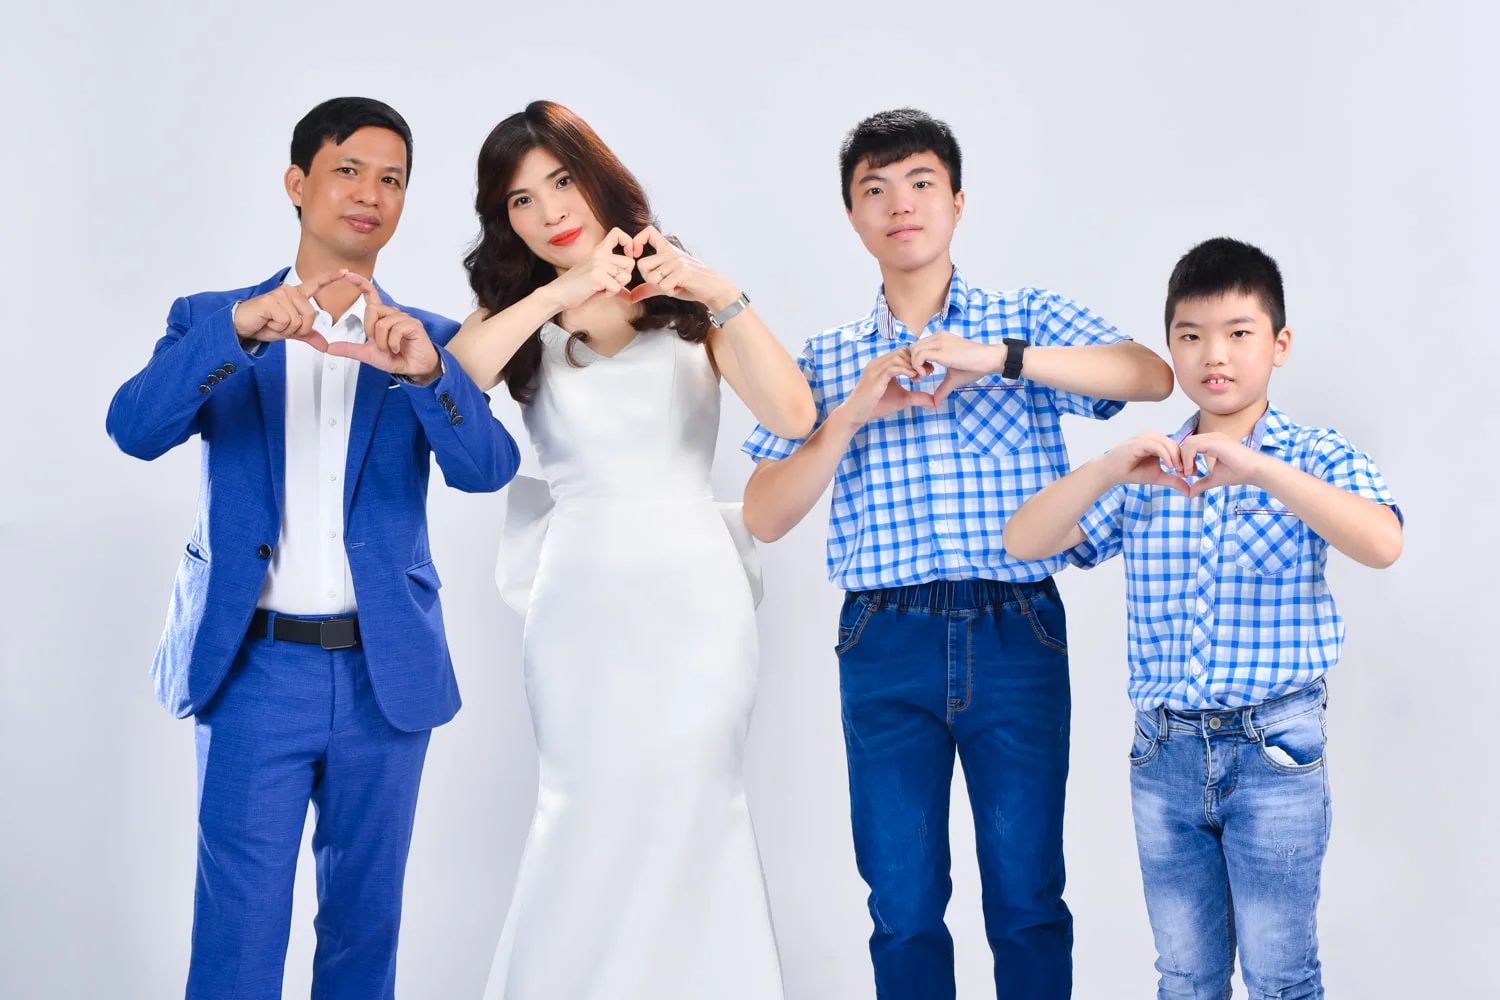 Anh gia dinh 4 nguoi 8 min - Chụp ảnh kỷ niệm 15 năm ngày cưới gia đình chị Tho- HThao Studio